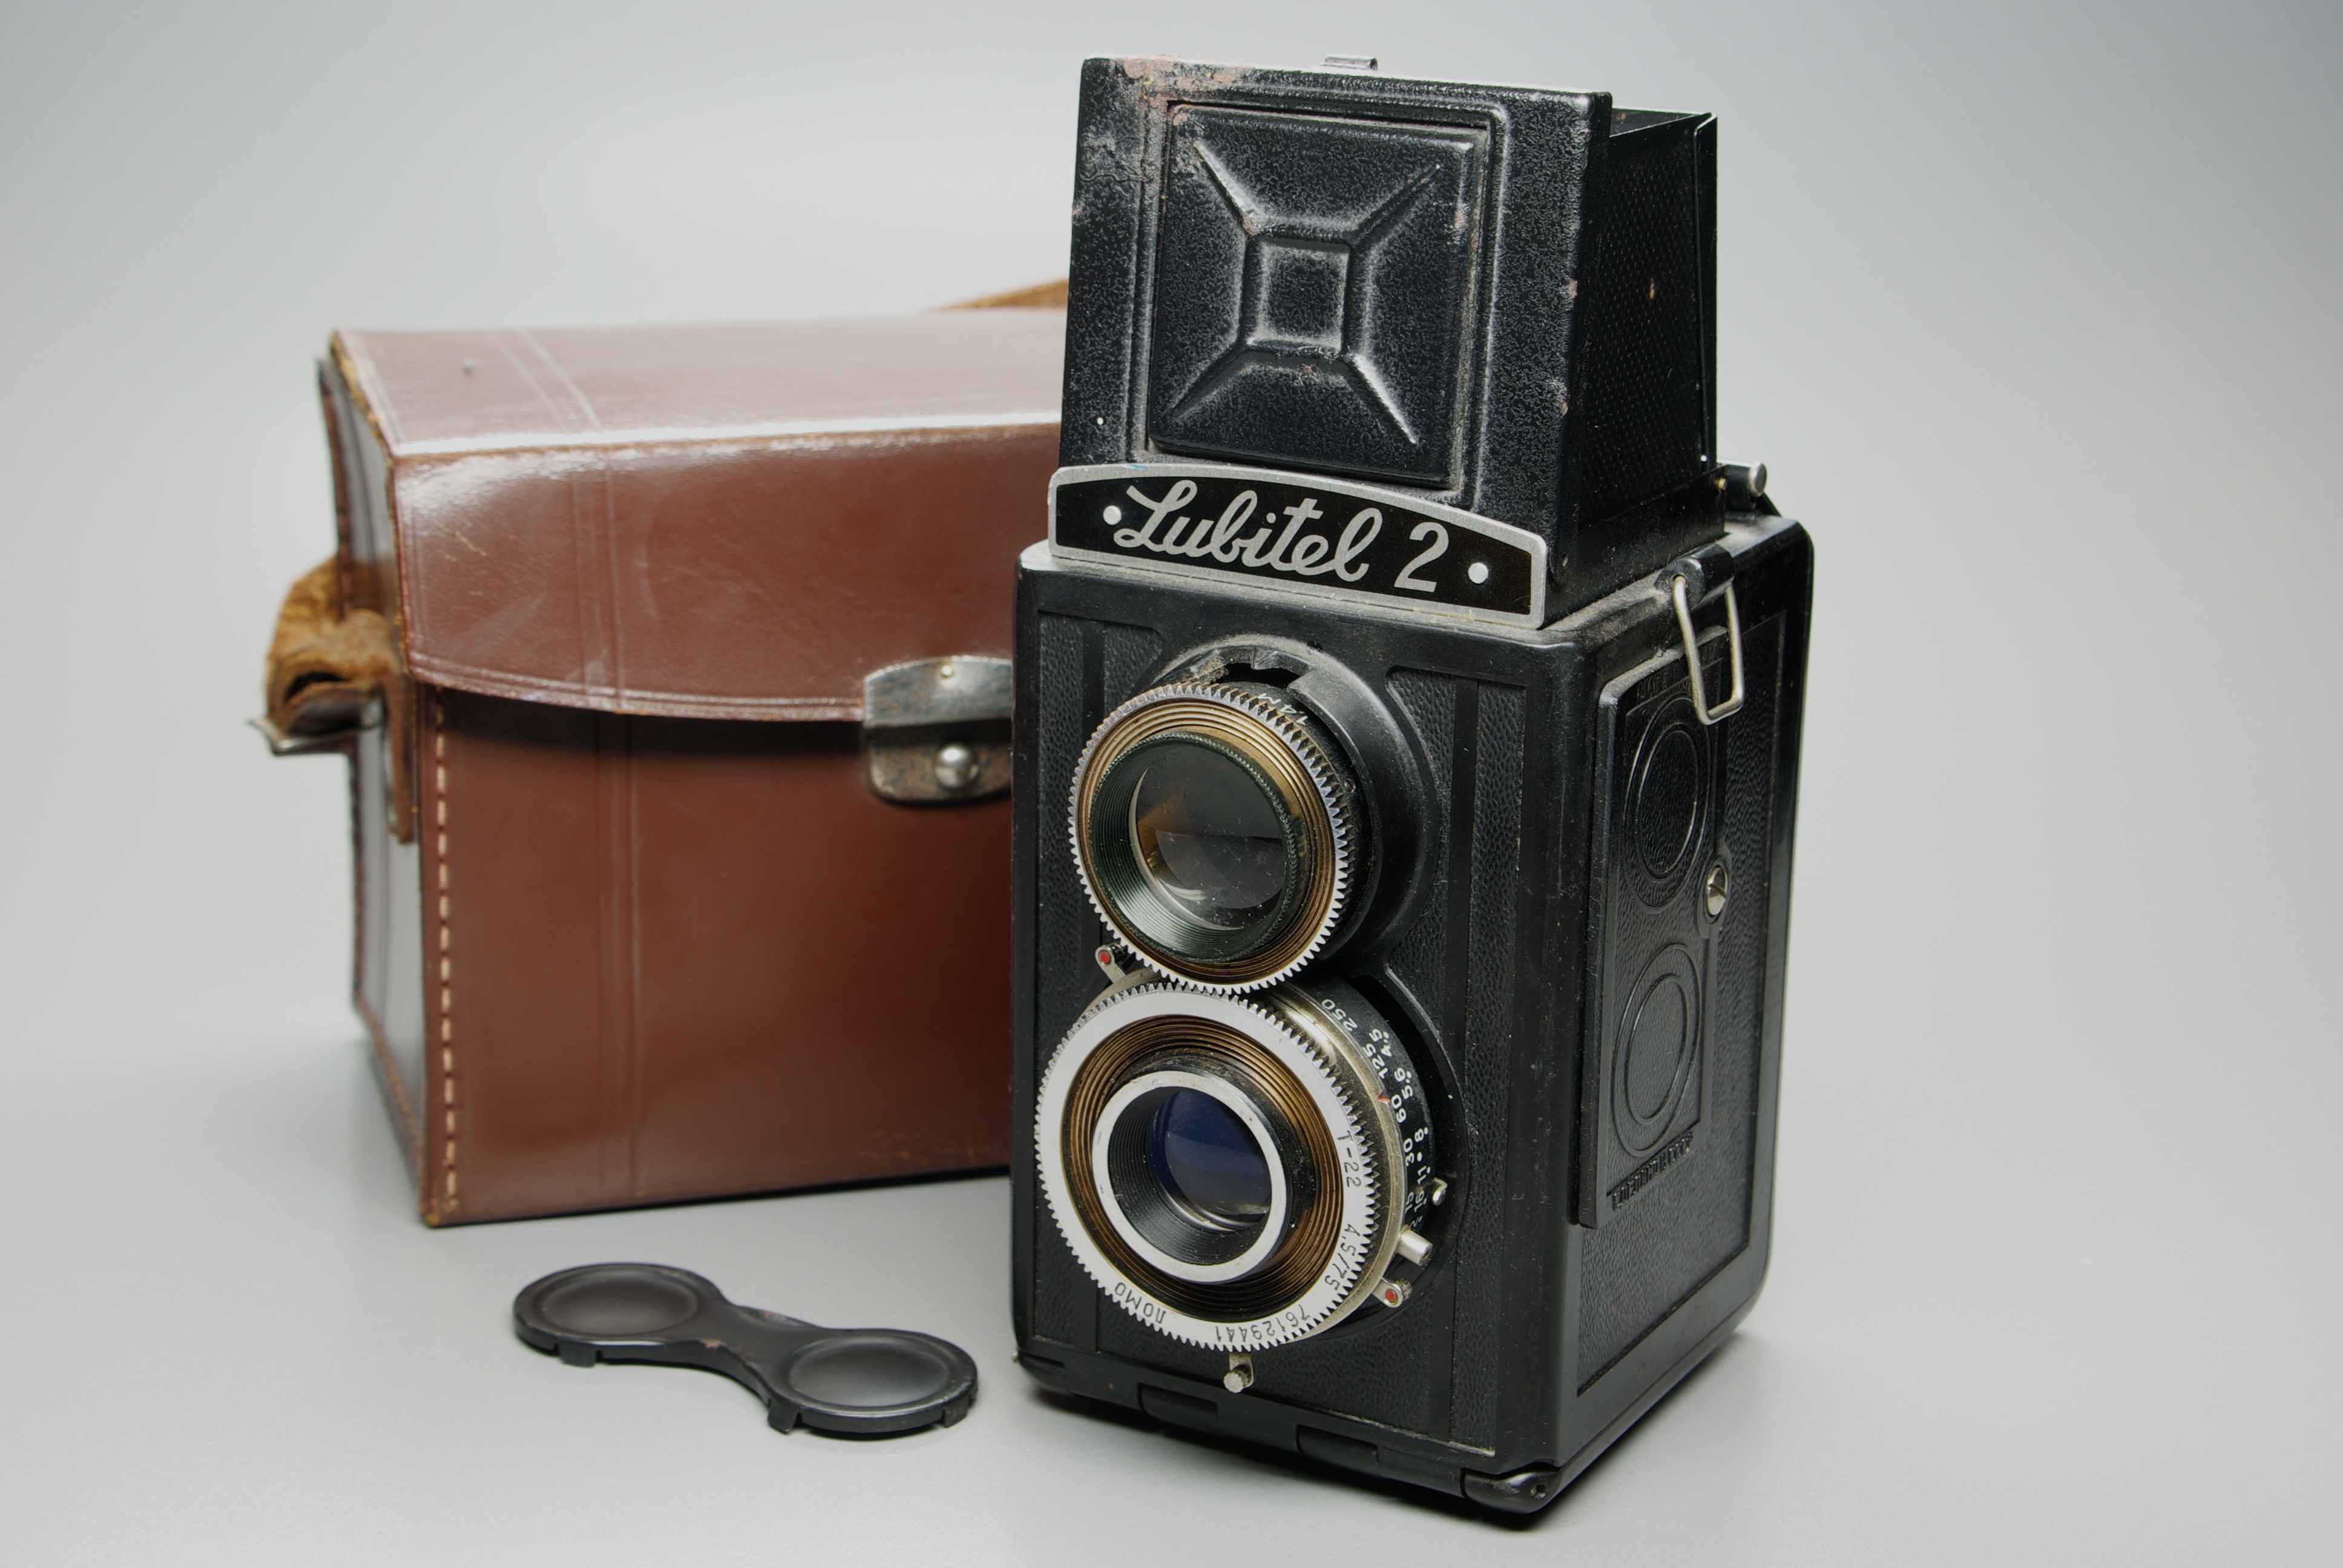 Lubitel 2 - vintage camera